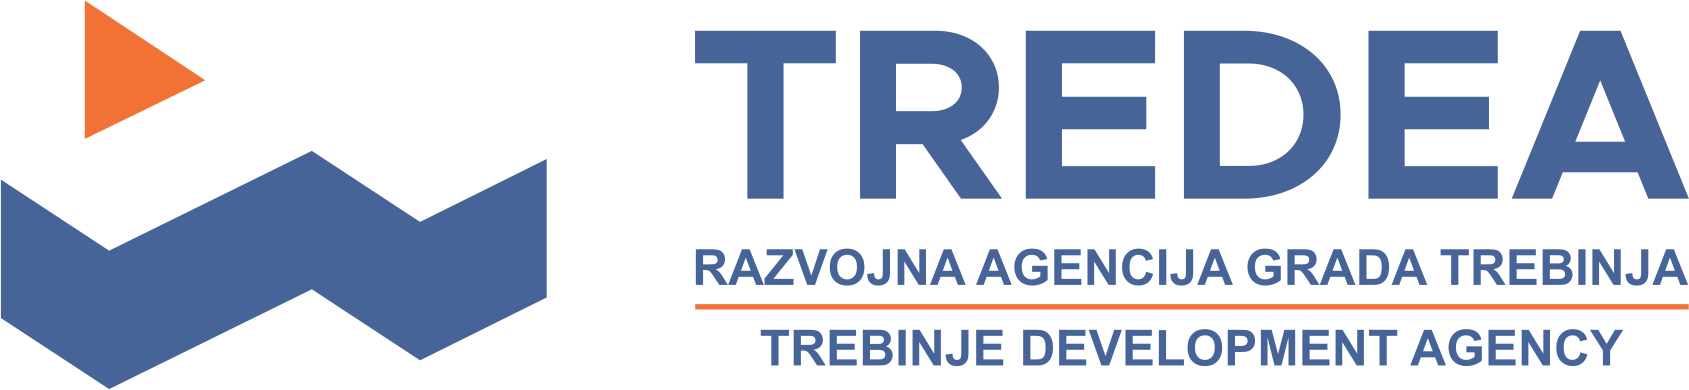 TREDEA logo providni.png